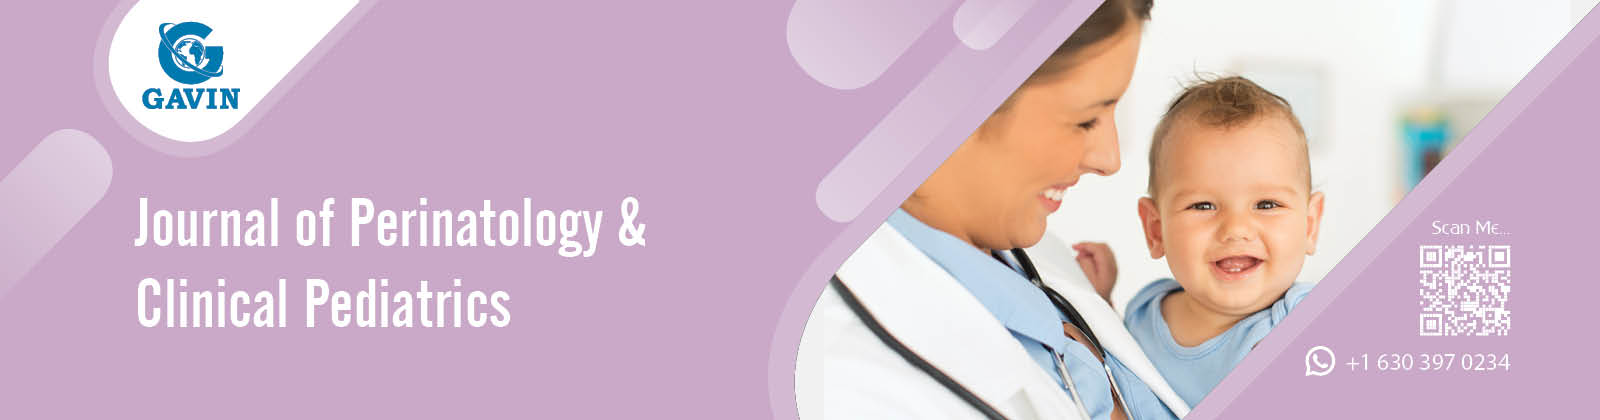 Perinatology & Clinical Pediatrics 2